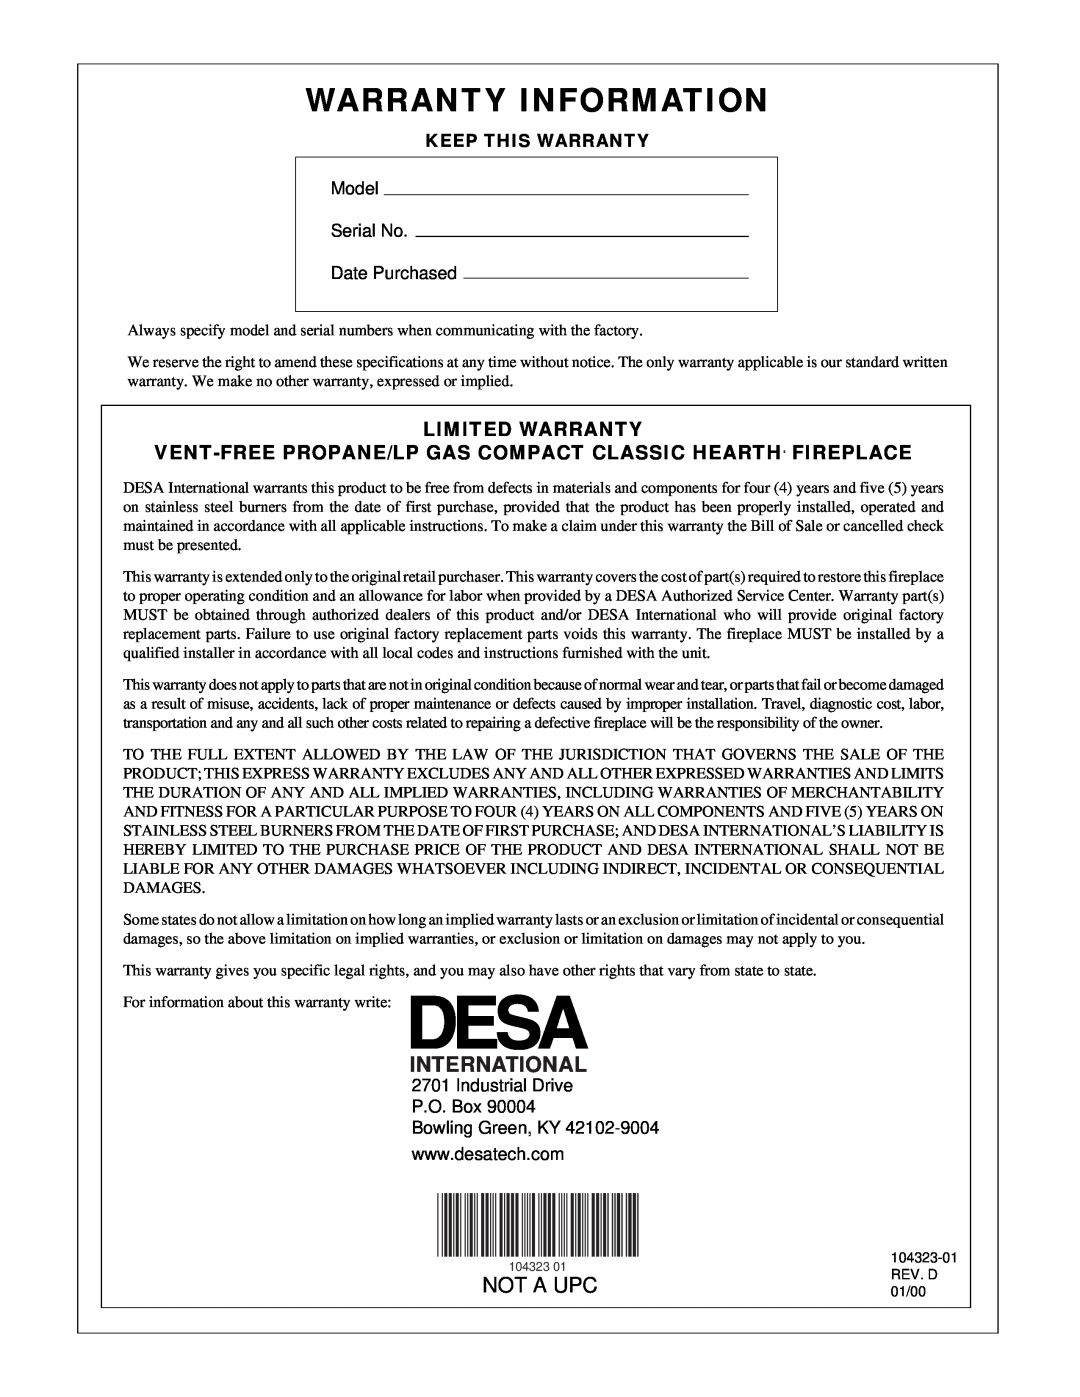 Desa VMH26PR installation manual International, Limited Warranty, Warranty Information, Not A Upc 